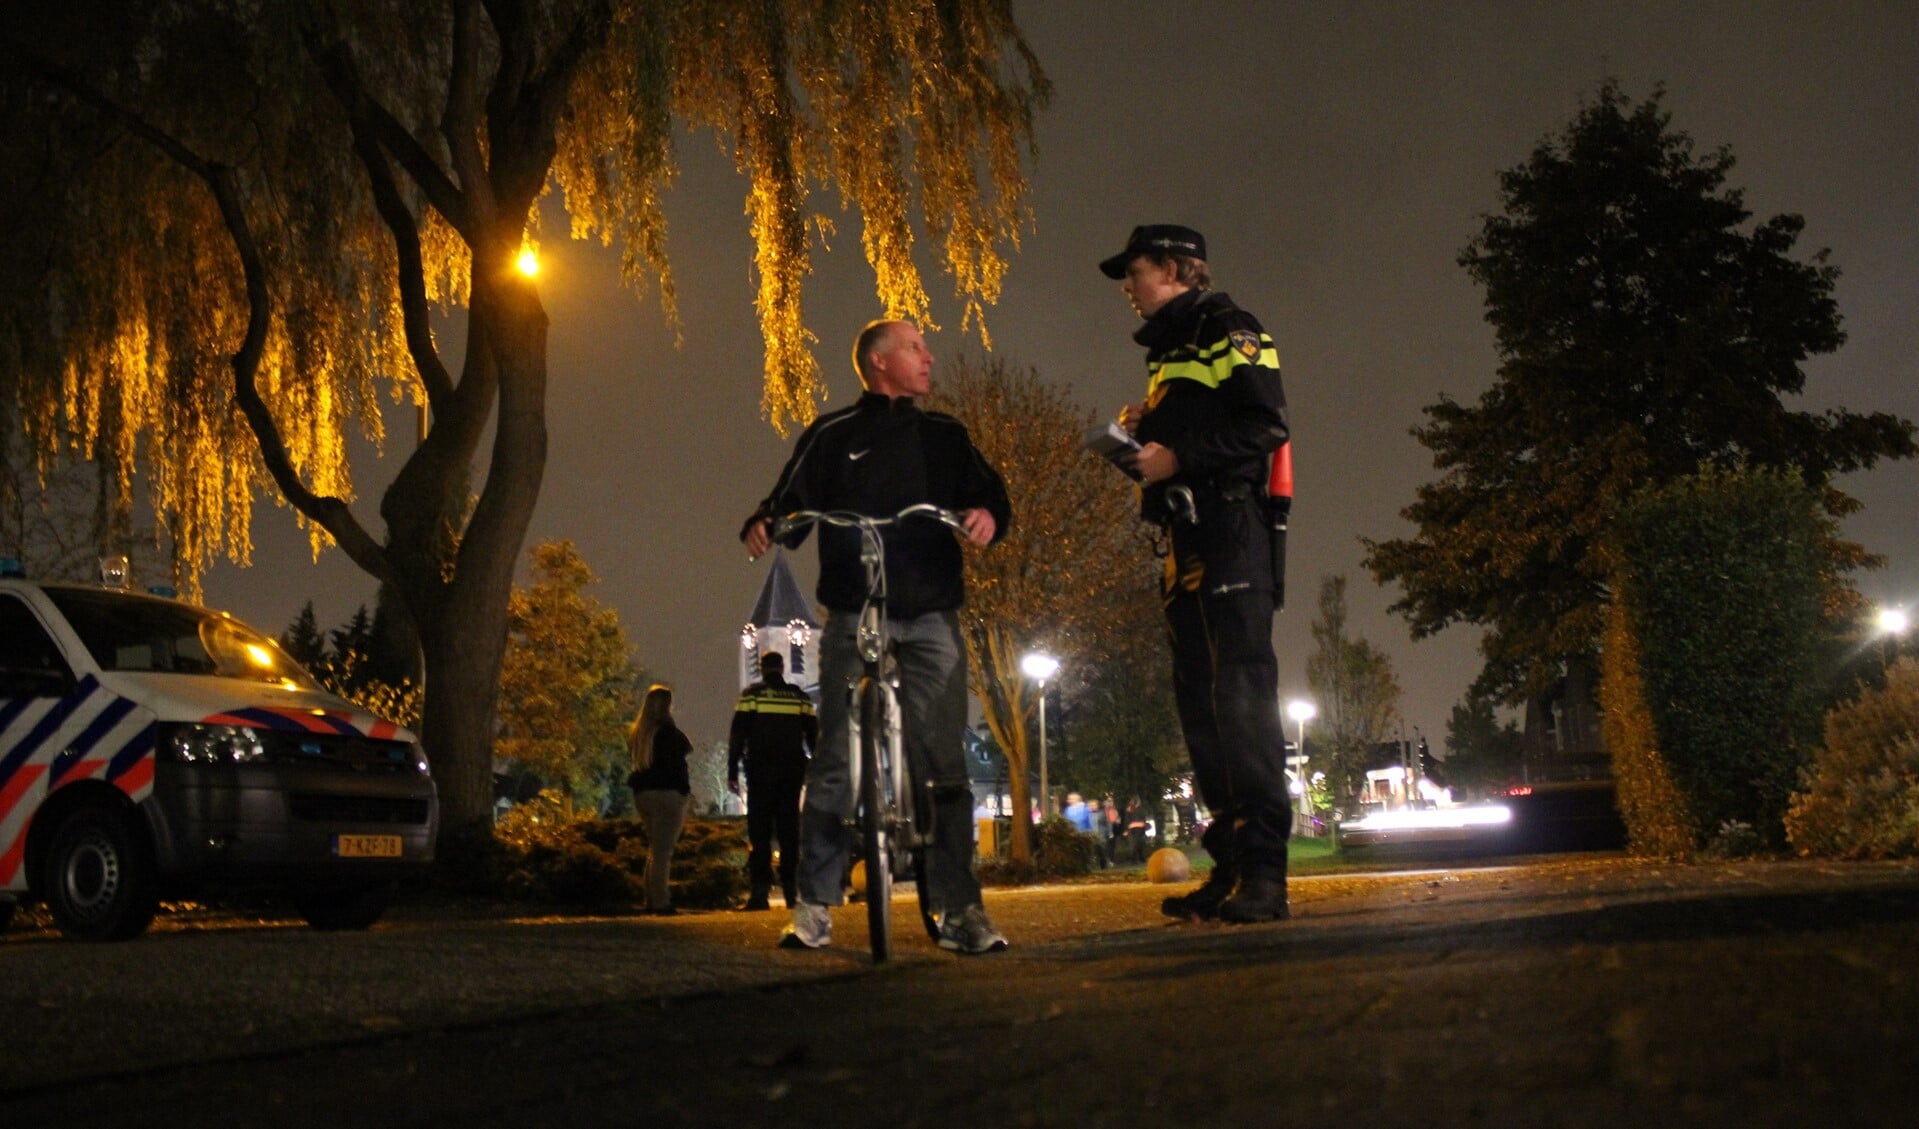 De politie waarschuwt inwoners alert te zijn. Foto: Martijn Mastenbroek (c)